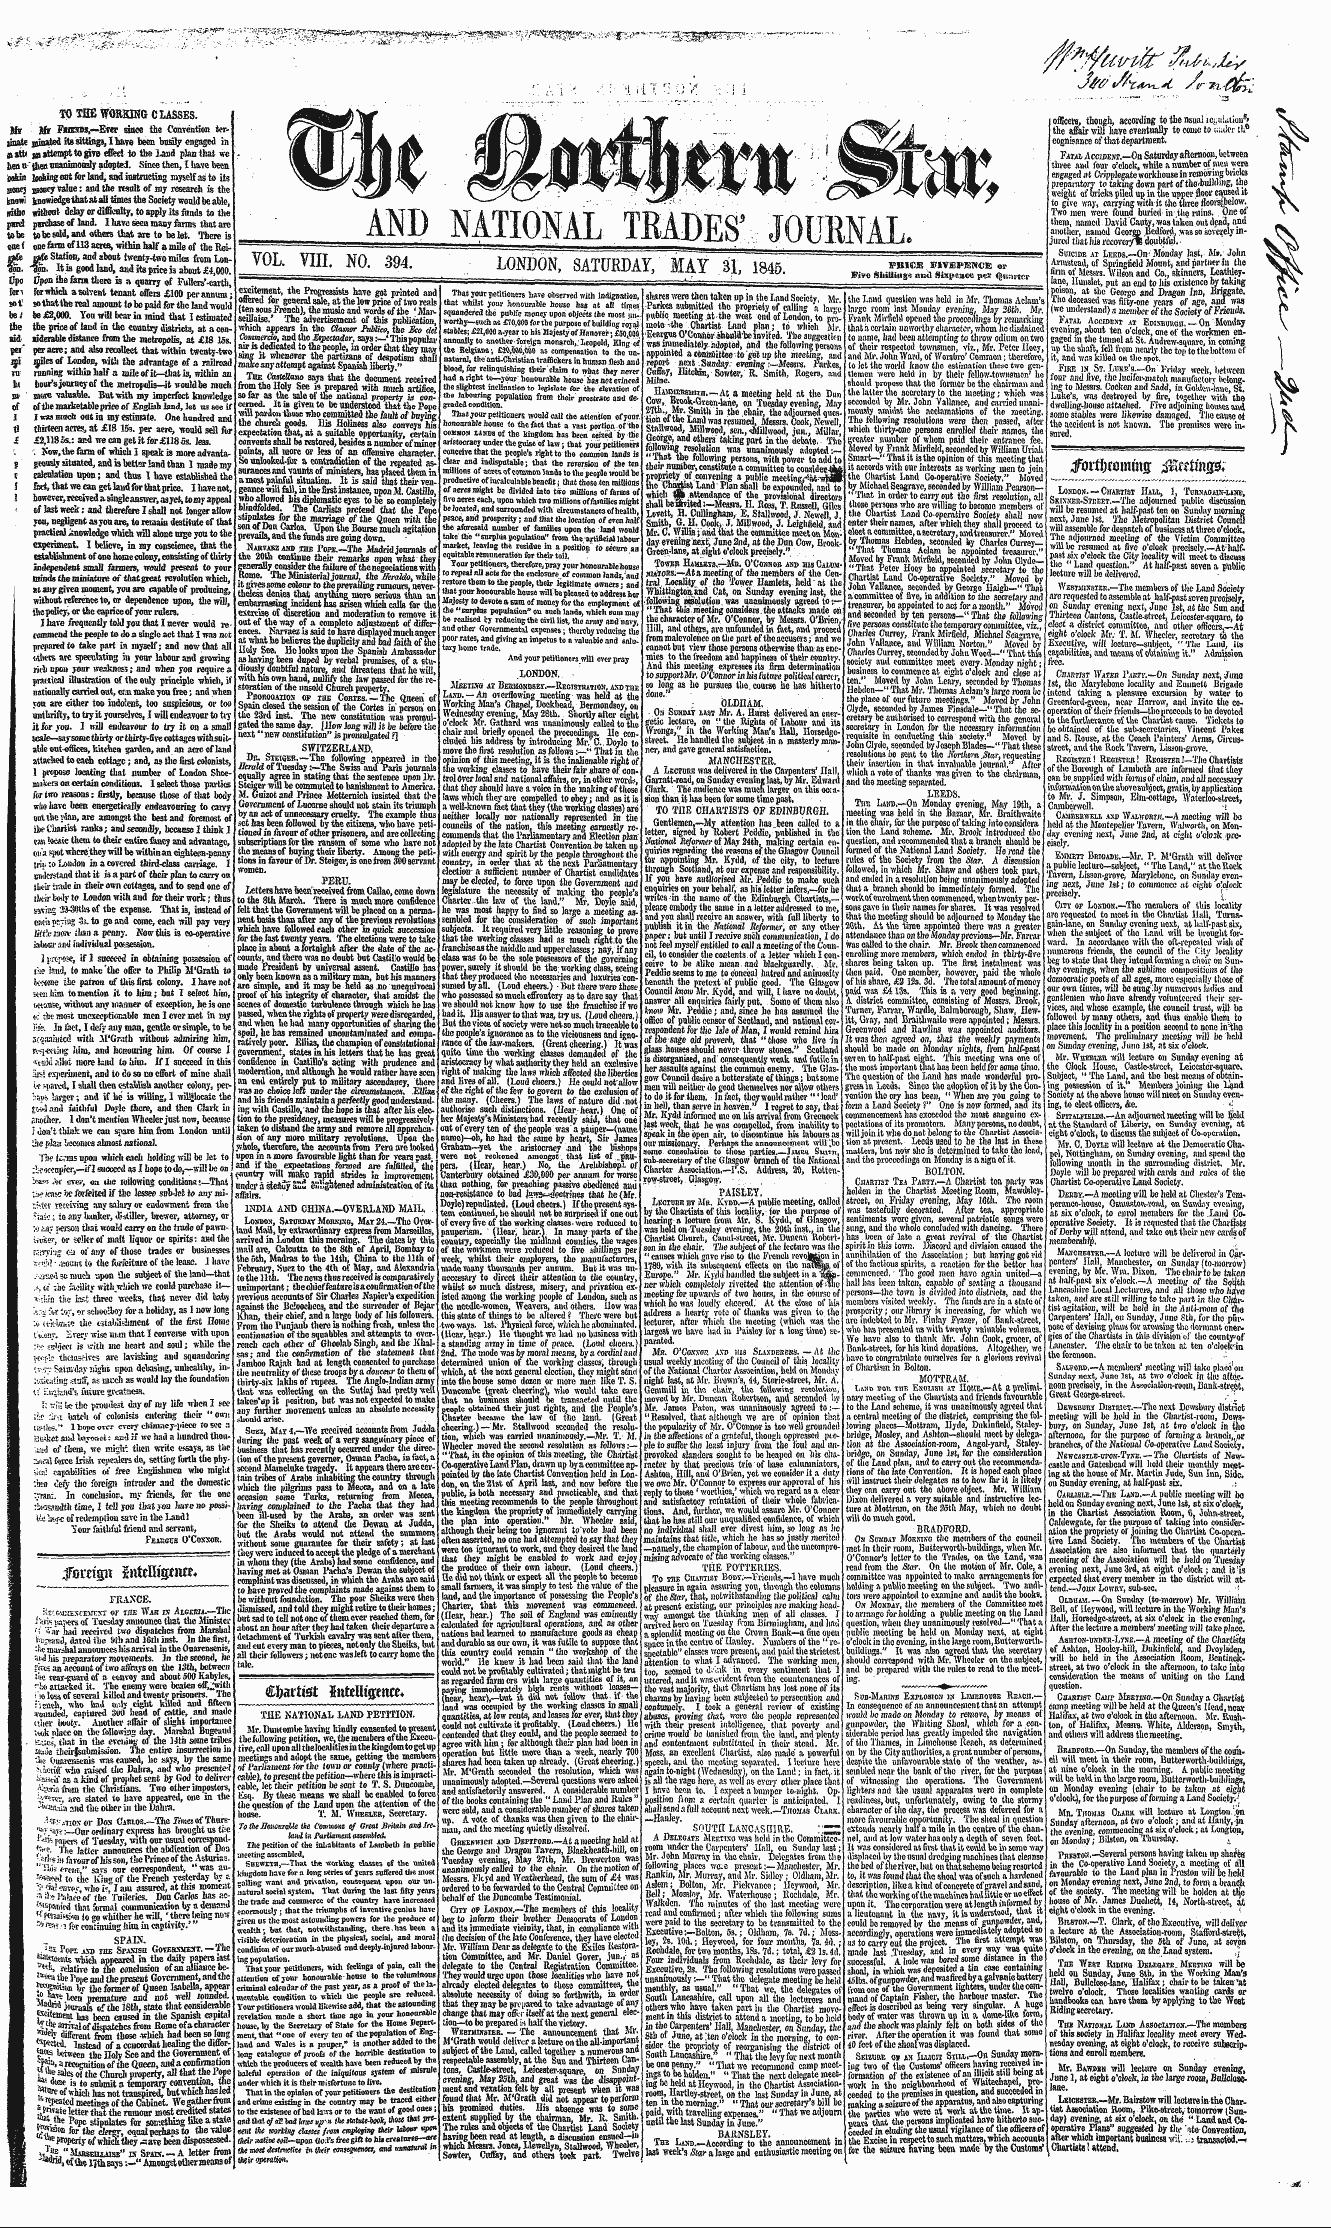 Northern Star (1837-1852): jS F Y, 3rd edition - Feum Tnwuflnitt